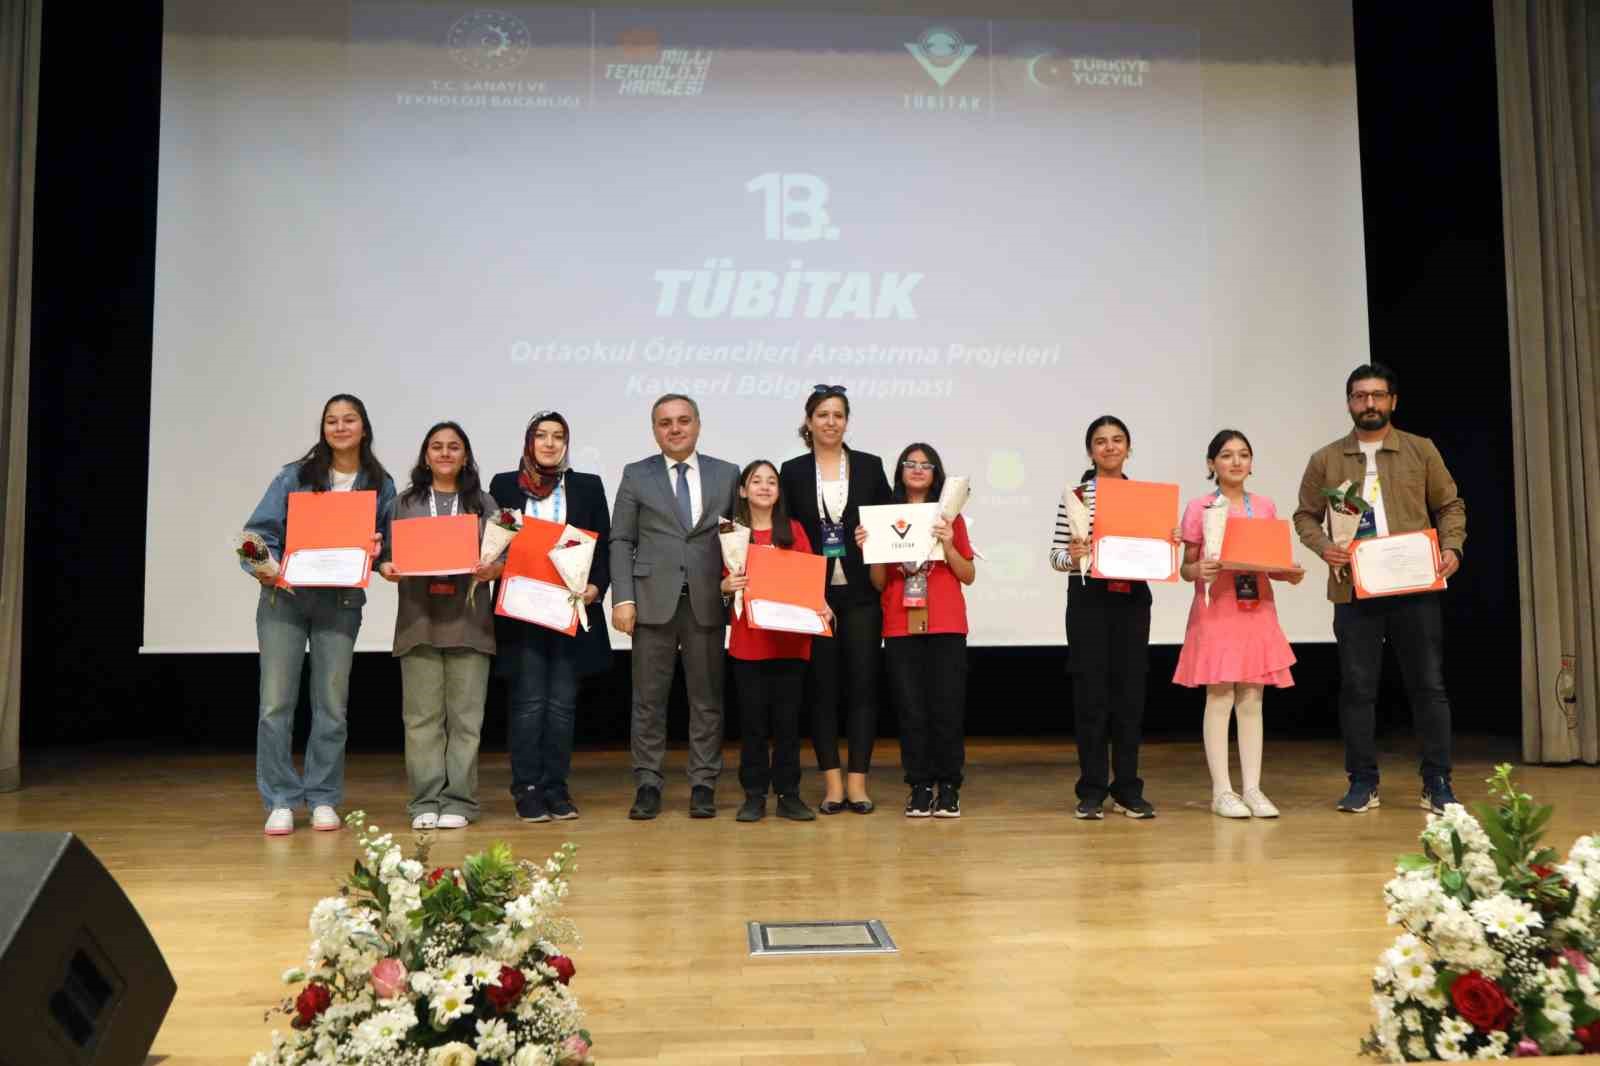 ERÜ’de Ortaokul Öğrencileri Araştırma Projeleri Kayseri Bölge Yarışması’nda ödüller sahiplerini buldu
